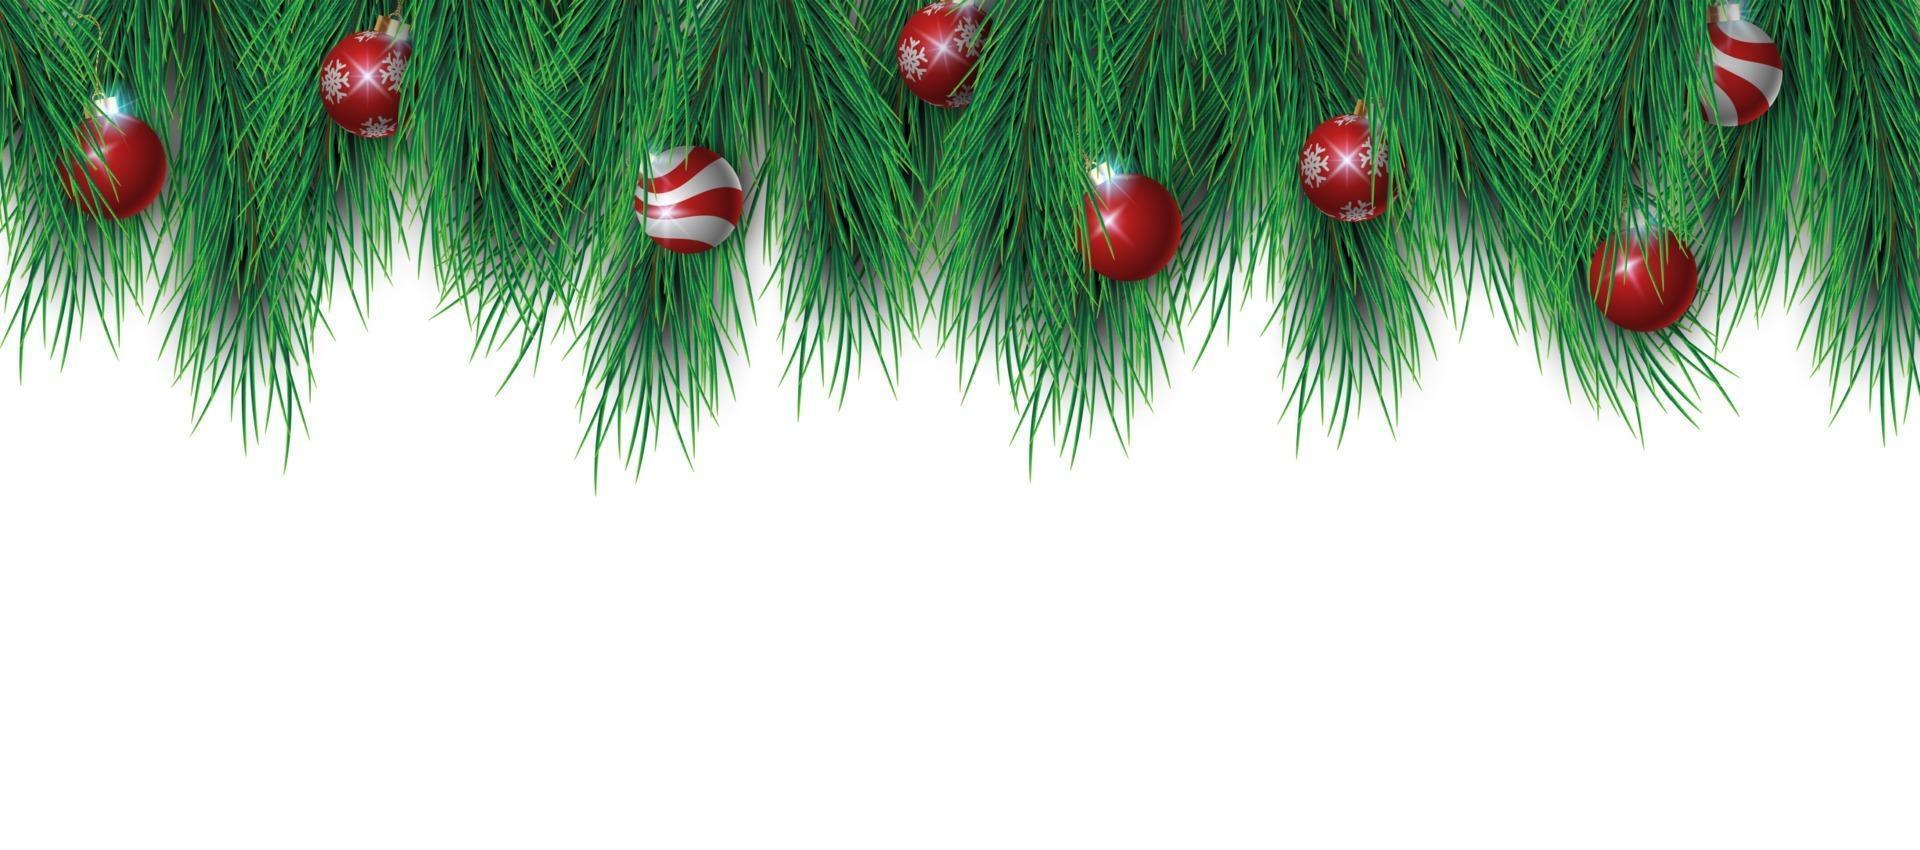 Ramas de los árboles de Navidad y bolas de Navidad aisladas sobre fondo blanco, ilustración vectorial vector